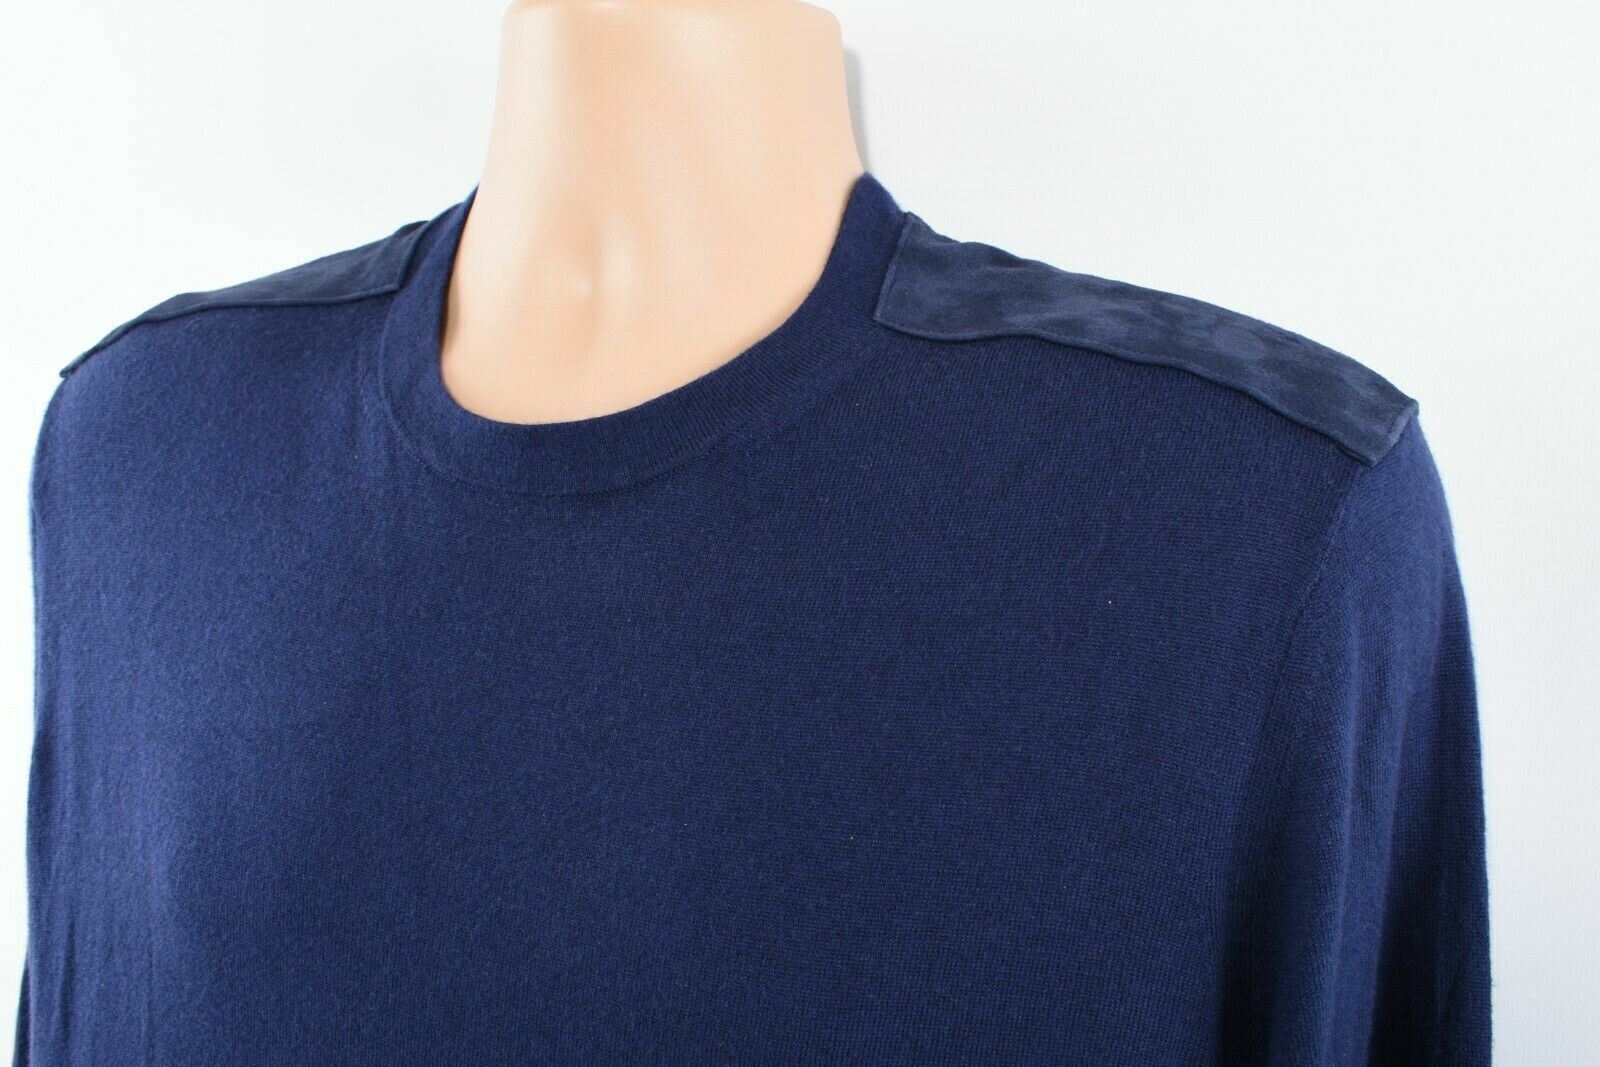 MICHAEL KORS Men's Indigo Blue Lightweight Knit Jumper, size XS